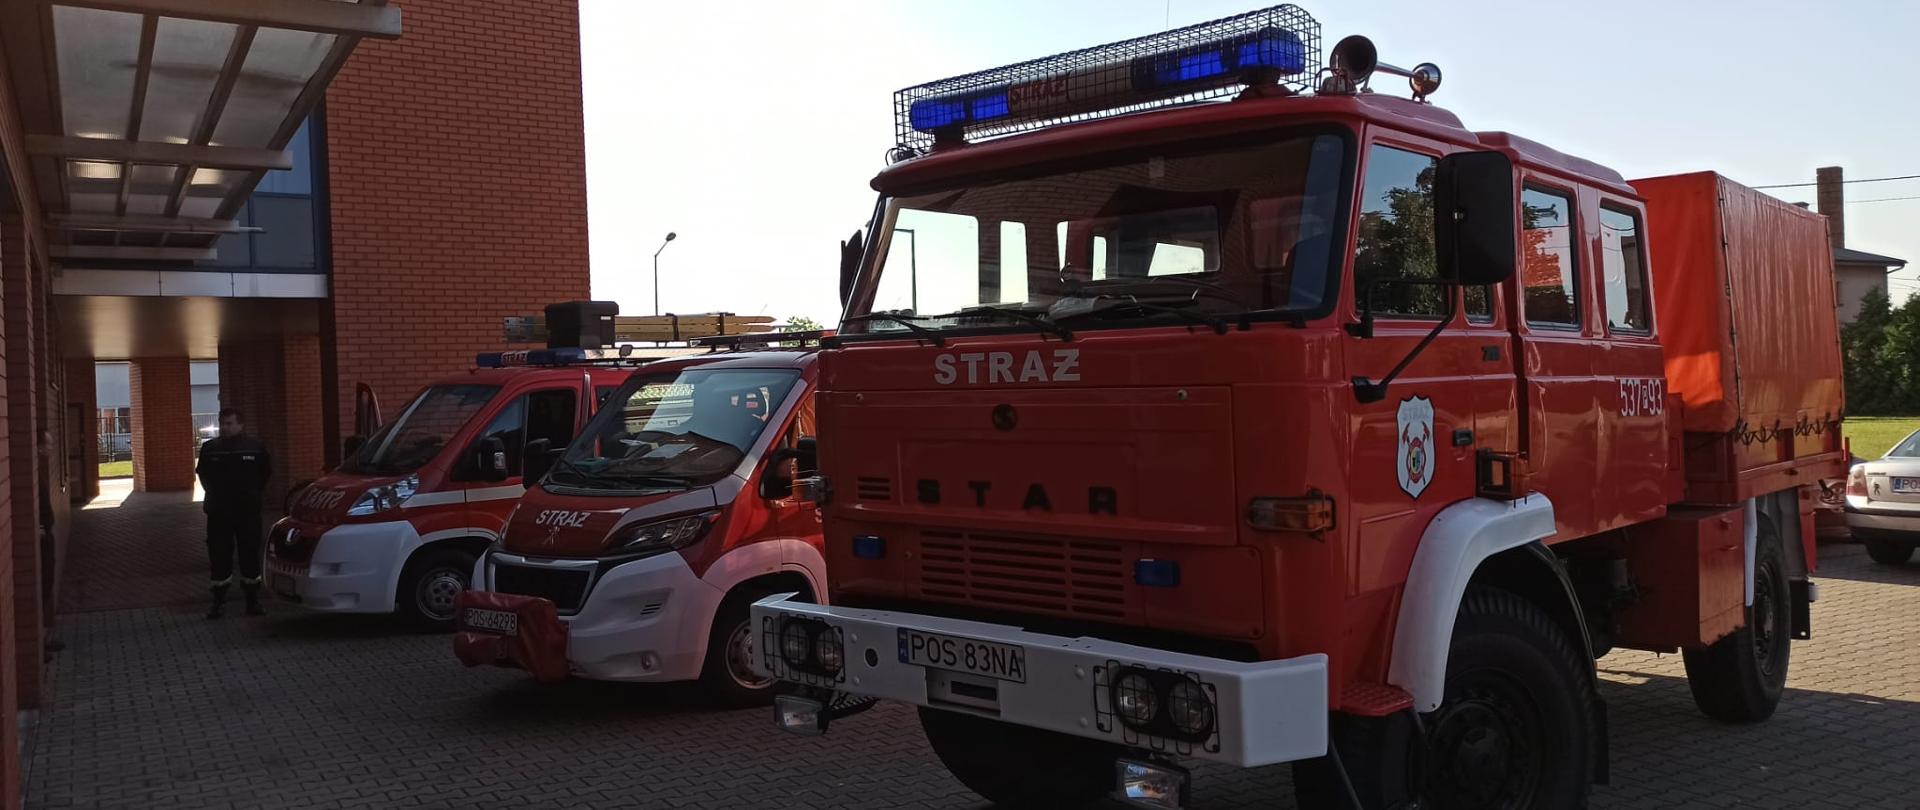 Trzy samochody pożarnicze ustawione przed Komendą Powiatową. Obok nich stoi druh w ubraniu koszarowym.